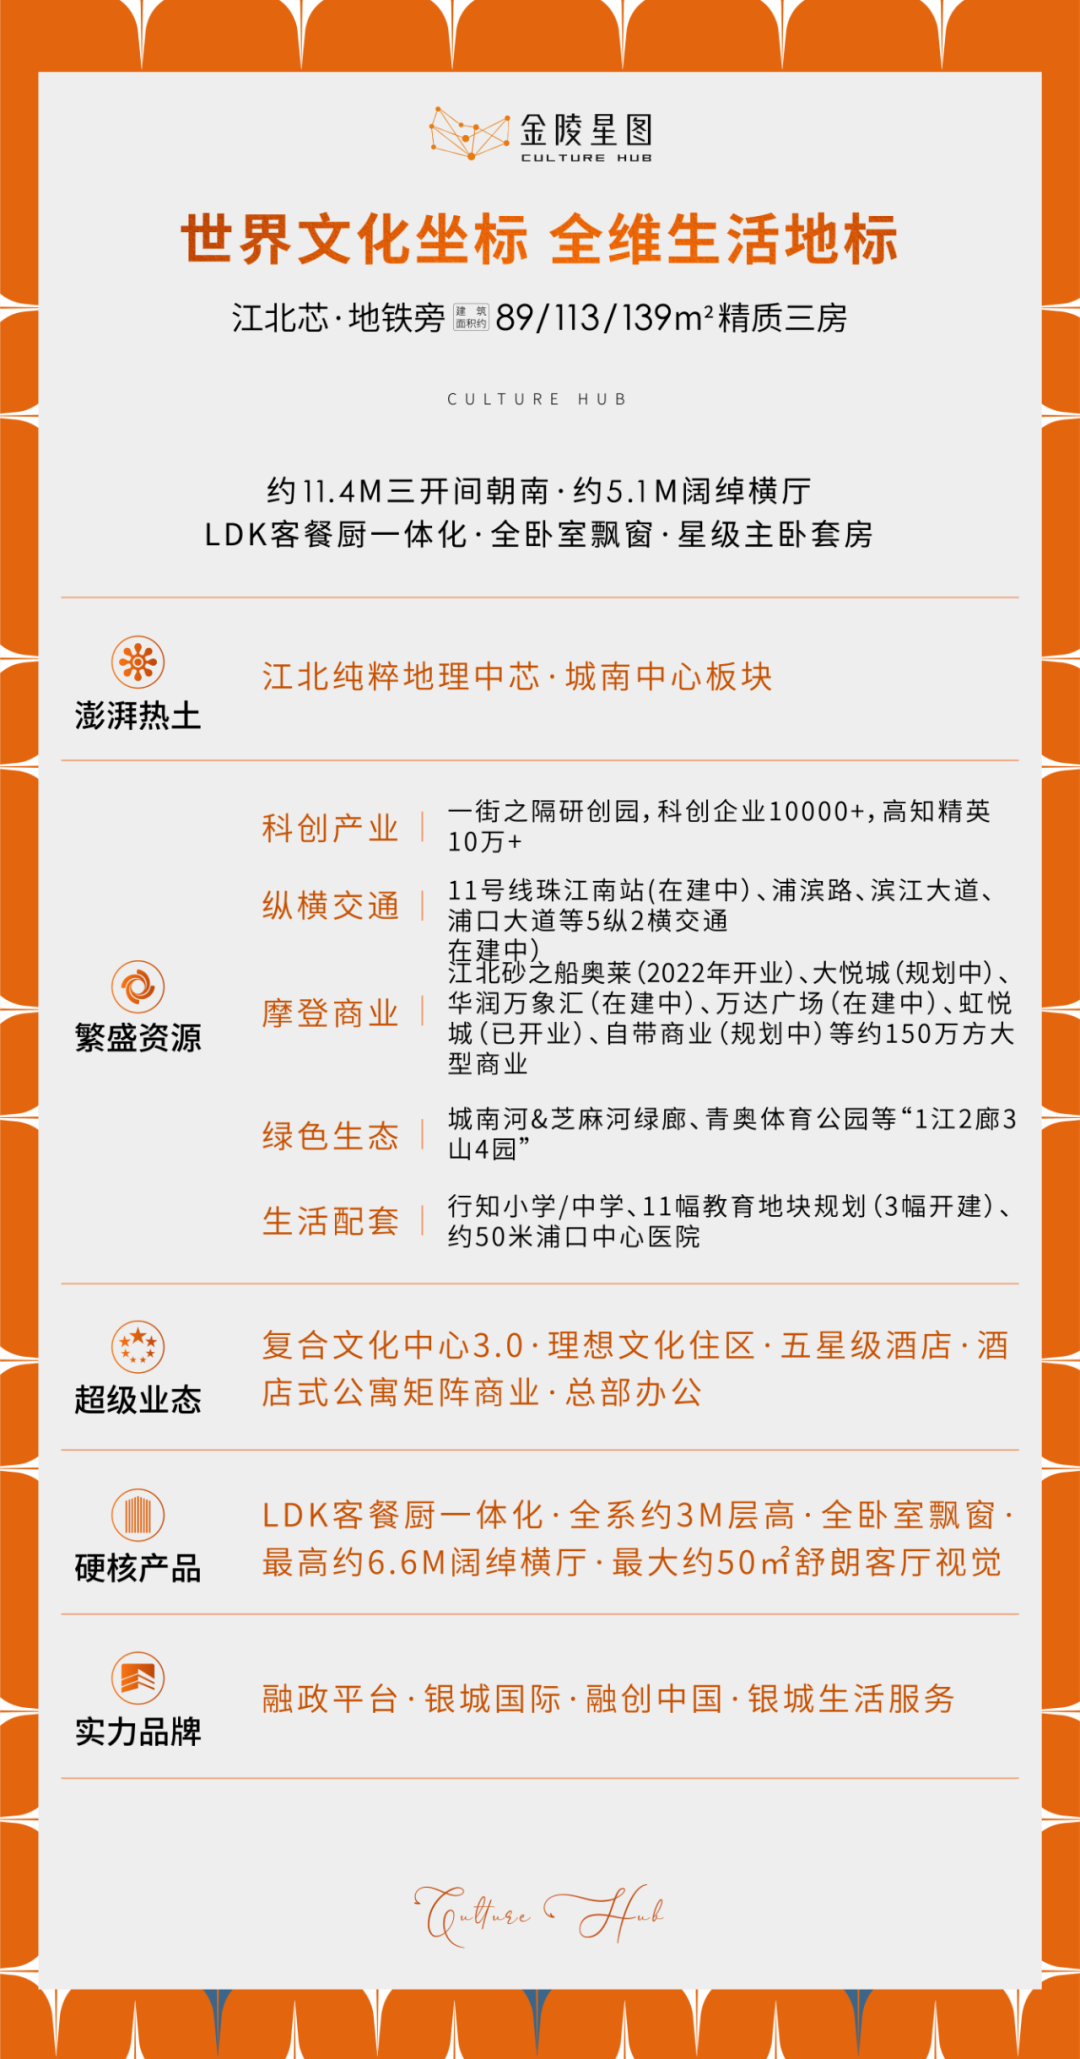 金陵星图  一次资源的镜像浓缩 一处代言南京的封面地标_中国网地产